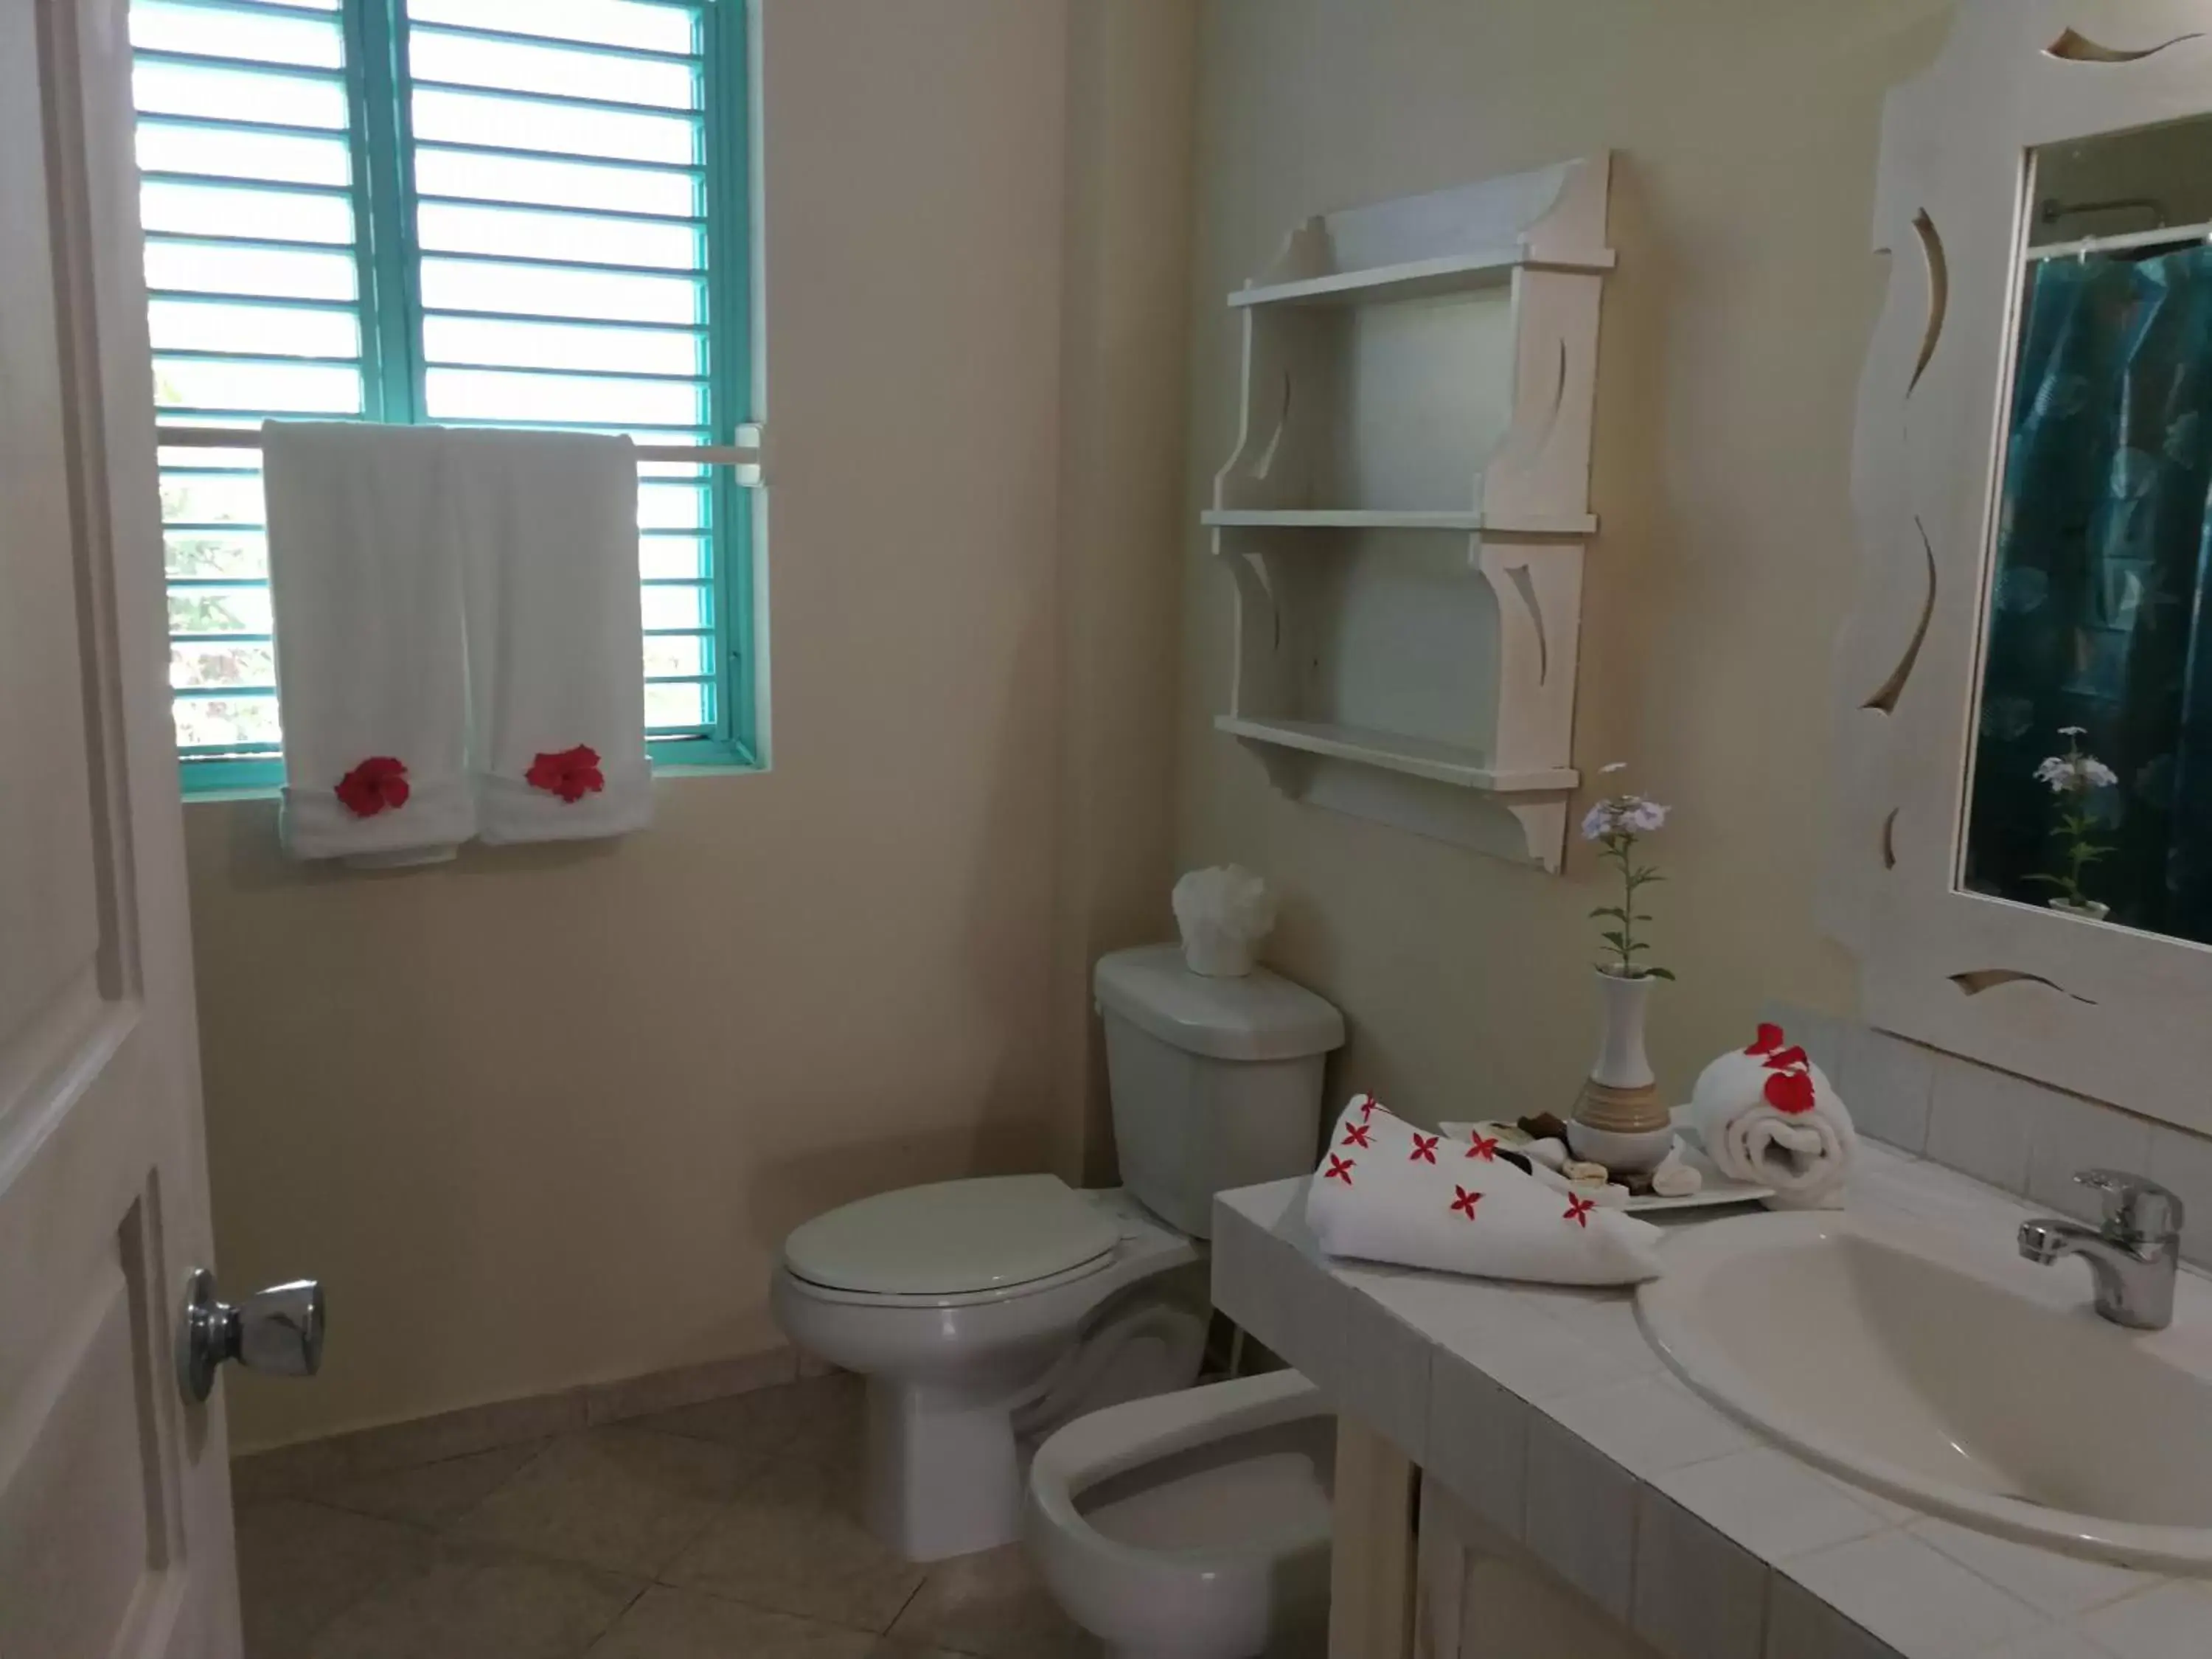 Bathroom in Hotel Villas Las Palmas al Mar